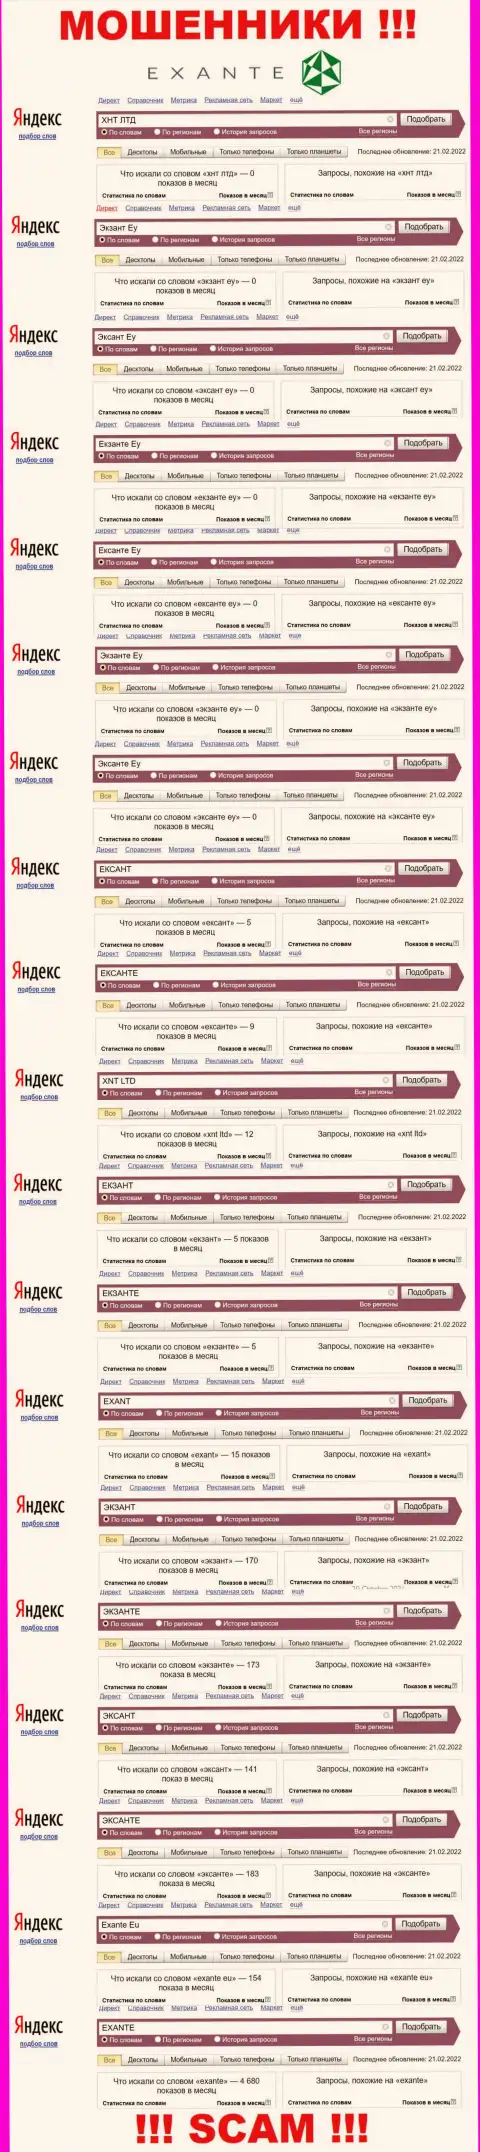 Число запросов в поисковиках всемирной internet сети по бренду мошенников ЭКСАНТЕ